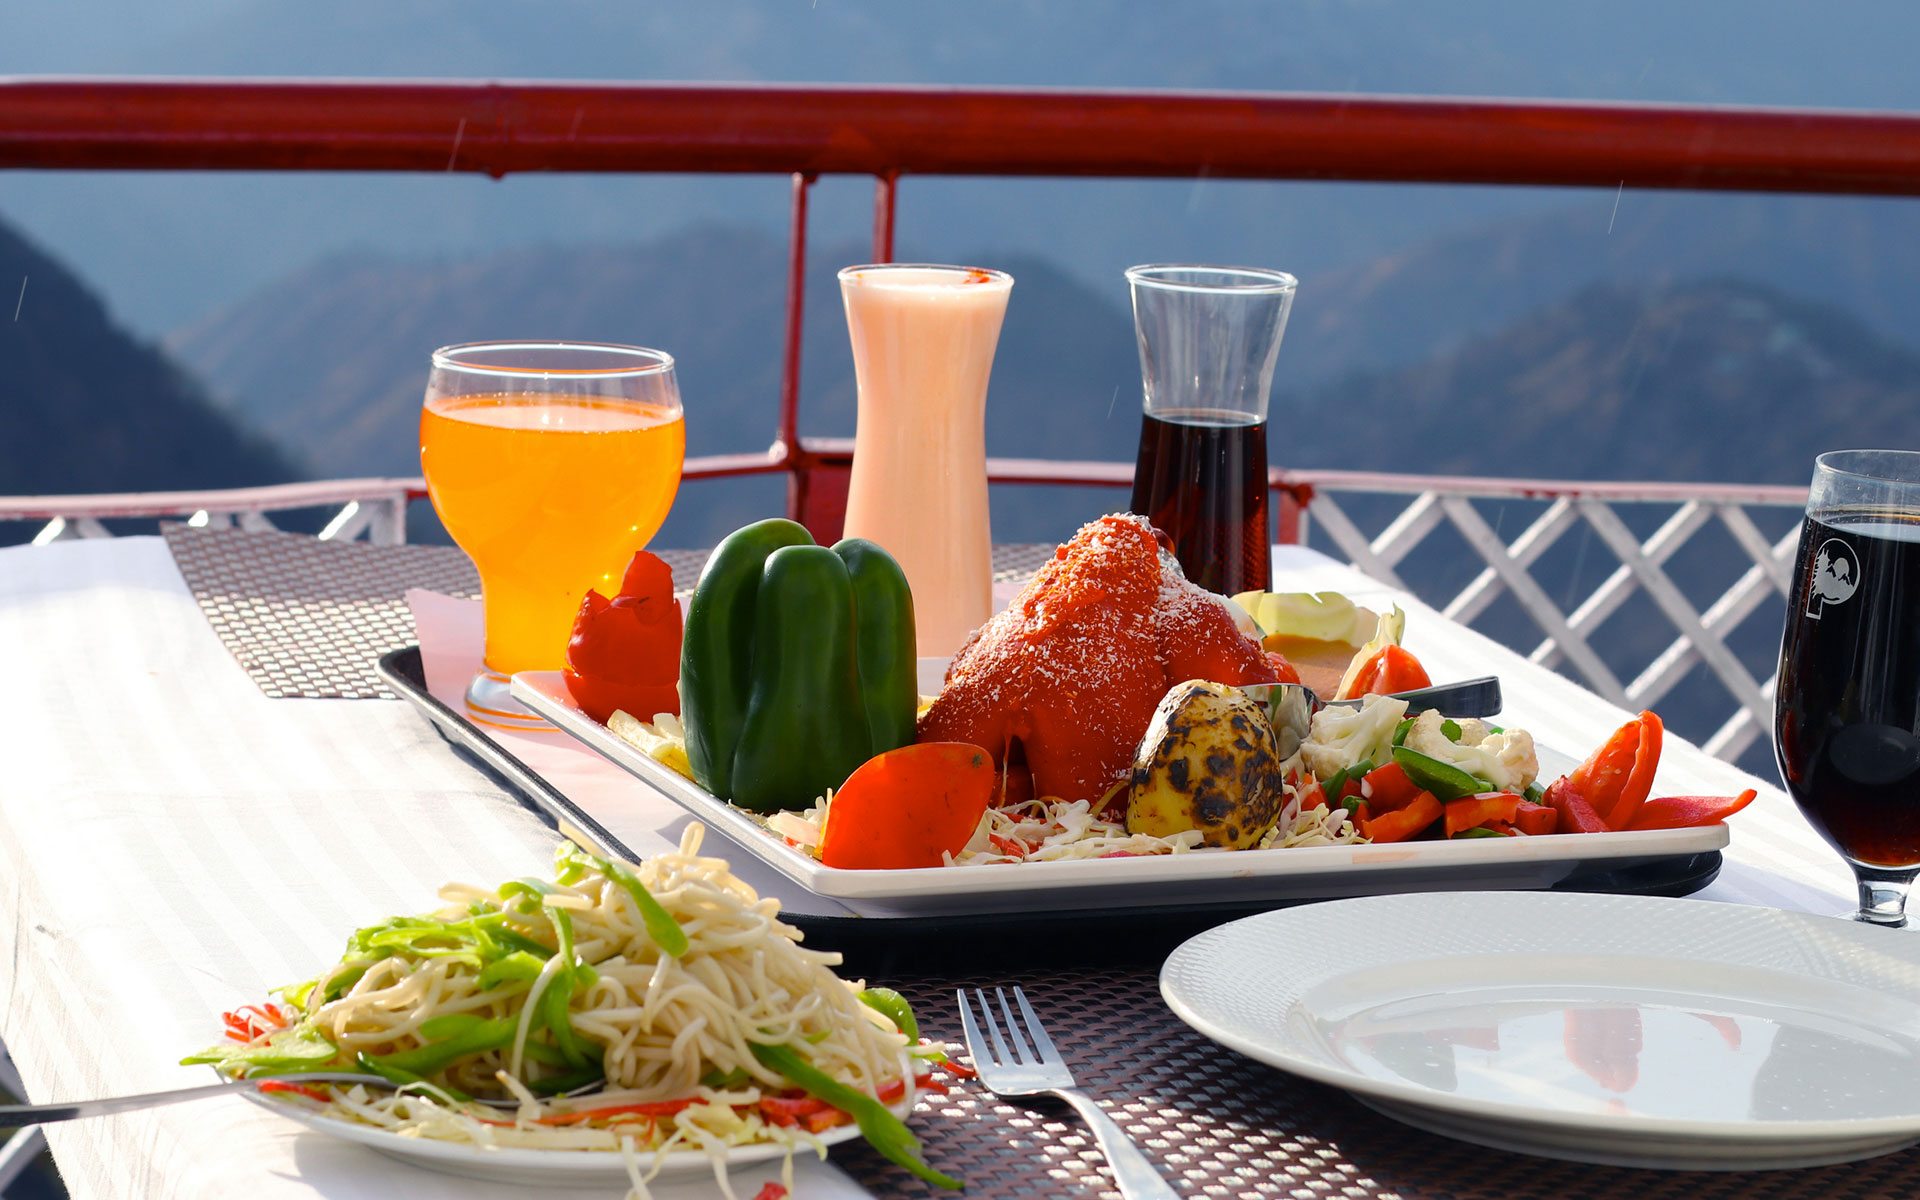 Kufri Pacific Resort Breakfast with mountain view